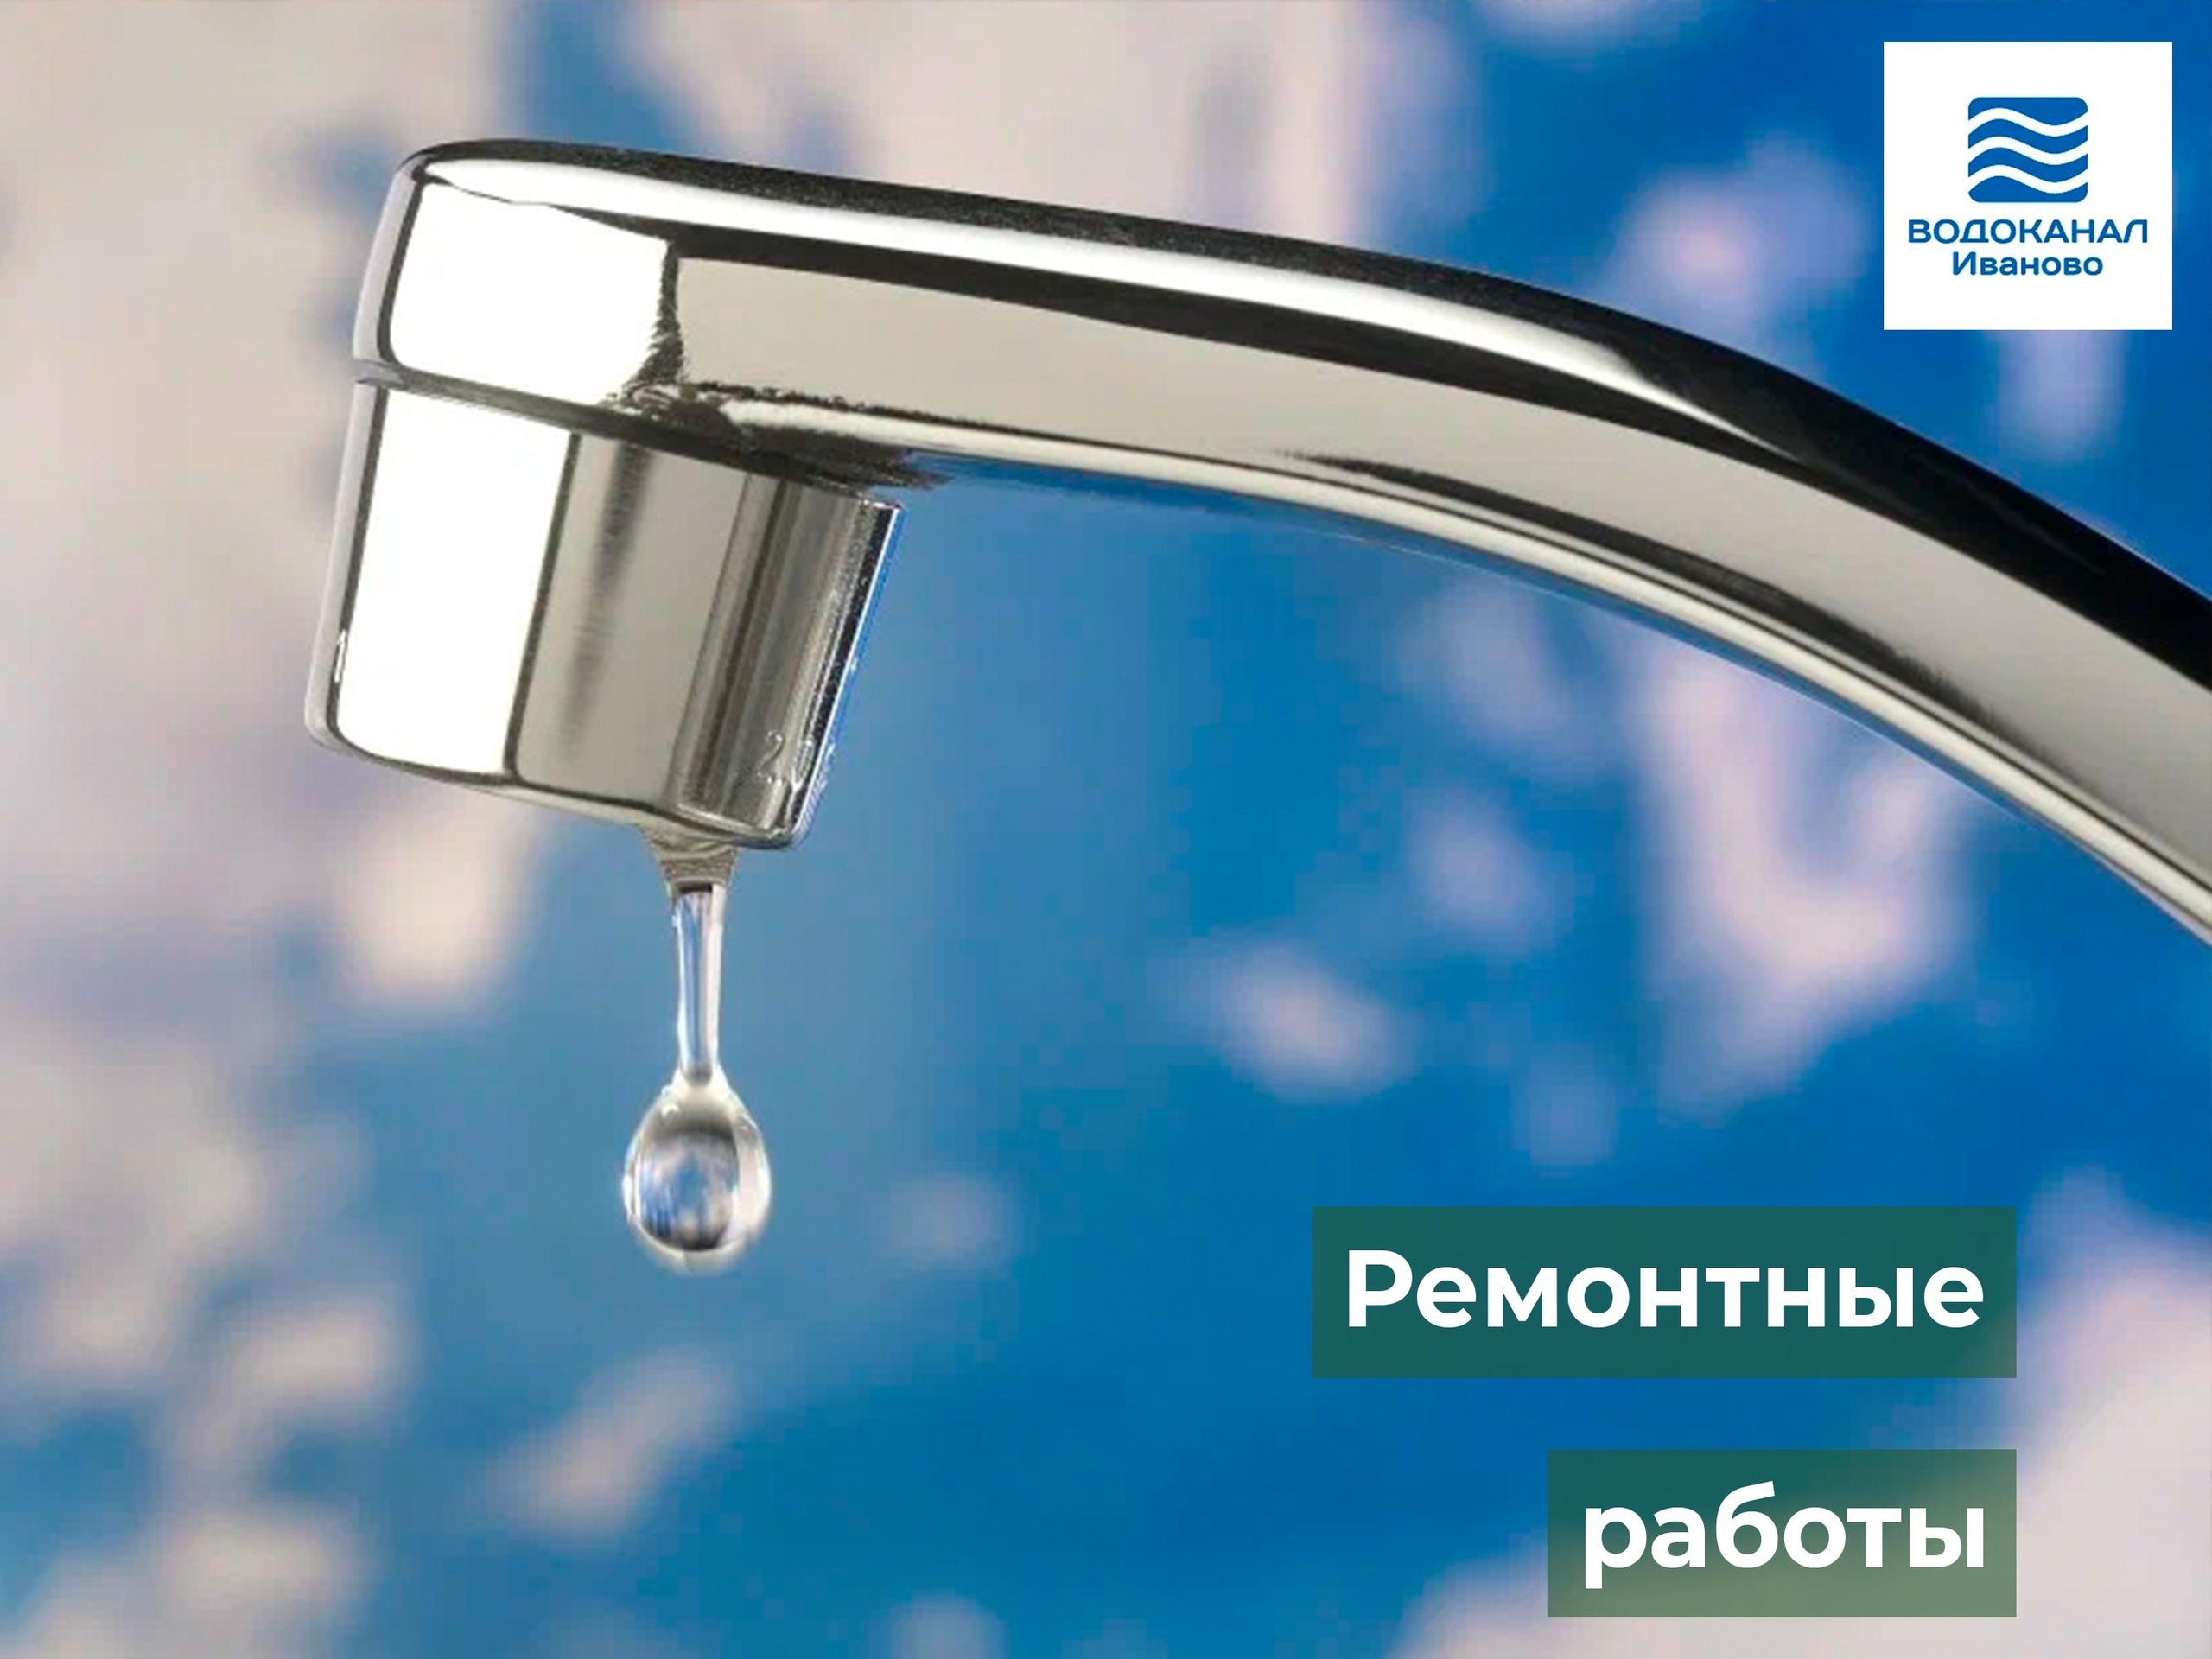 11 июля запланировано проведение ремонтных работ на АРТ-скважине  по ул. Высоцкого.